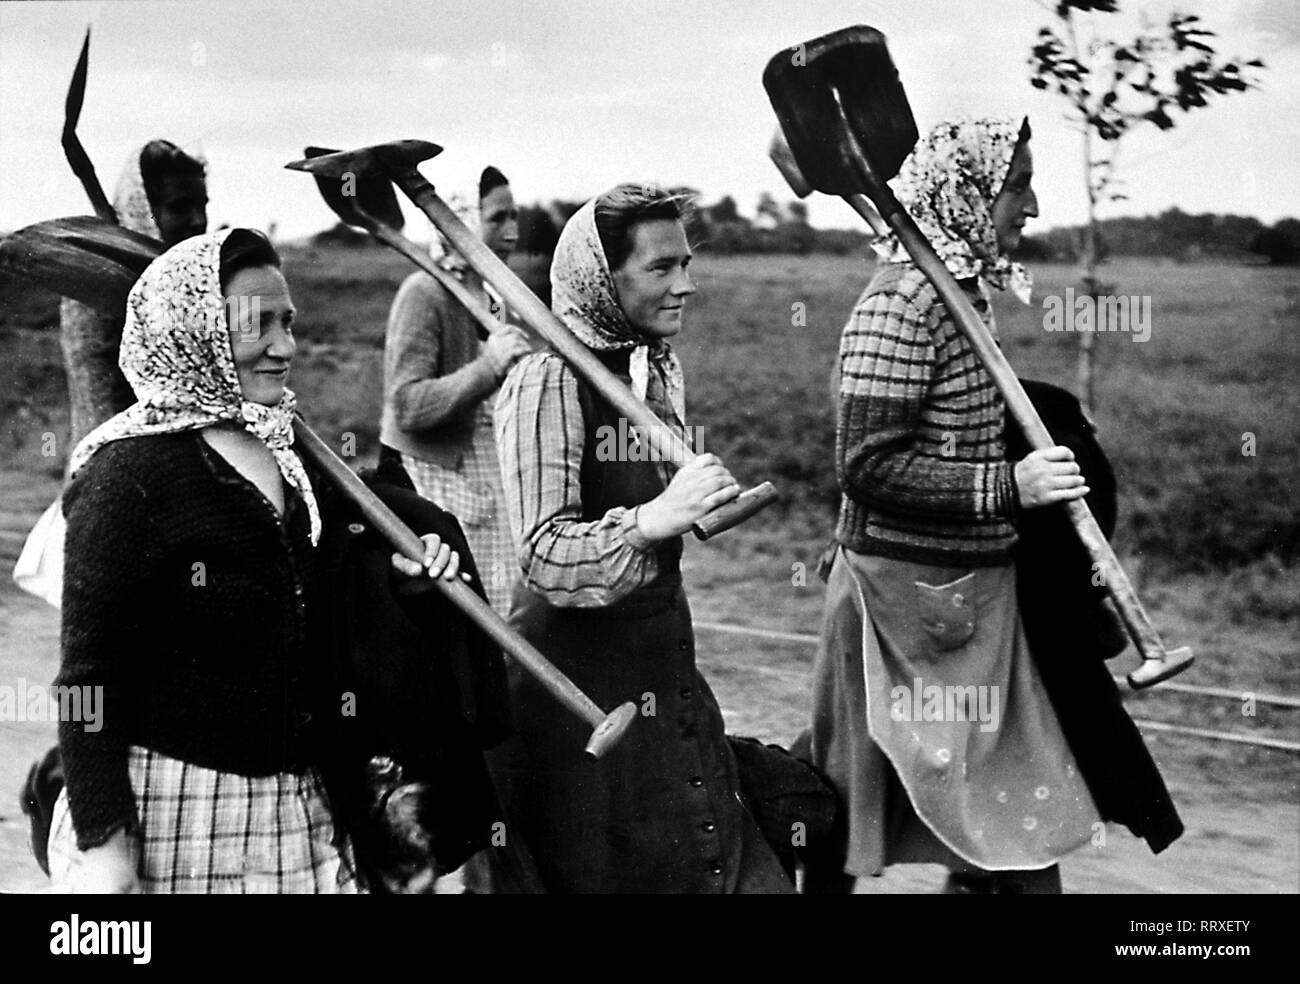 Women - Frauen, Kopftücher, Schaufeln, Arbeit, Arbeitsweg, Kittel, Schürzen, Himmel, Landwirtschaft Stock Photo